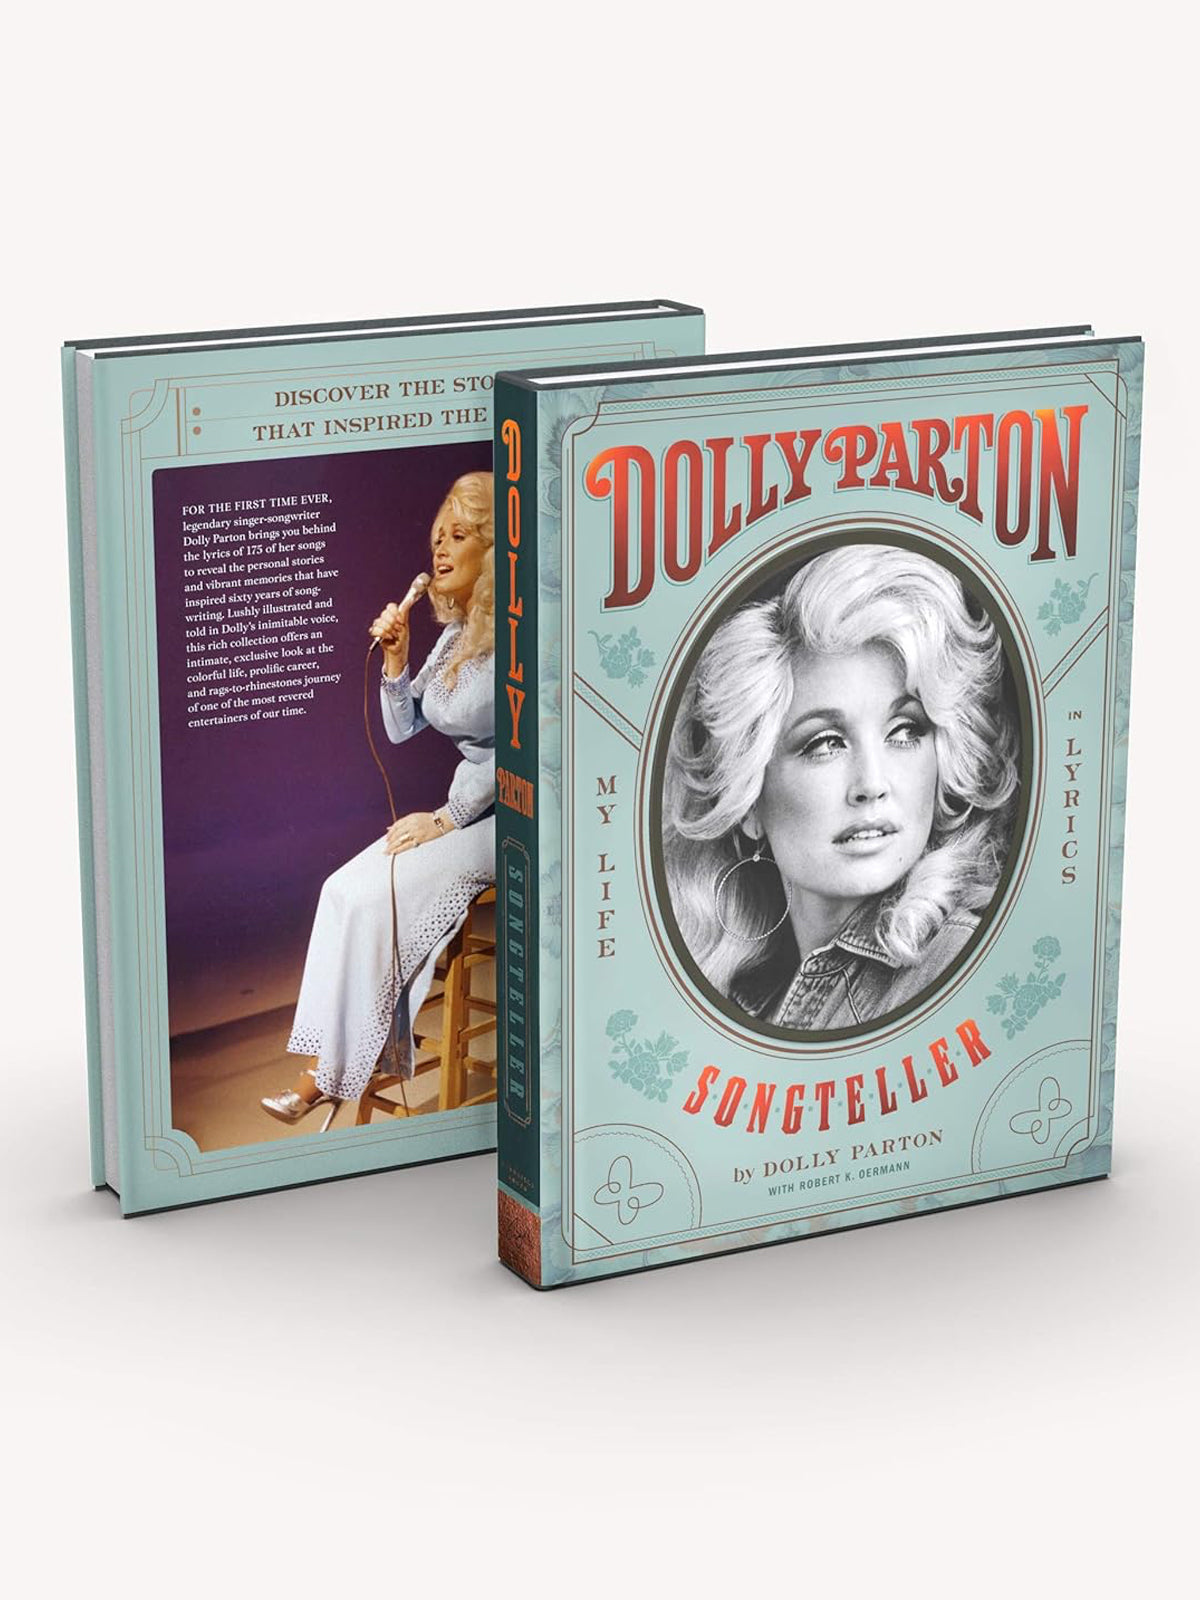 Dolly Parton Book